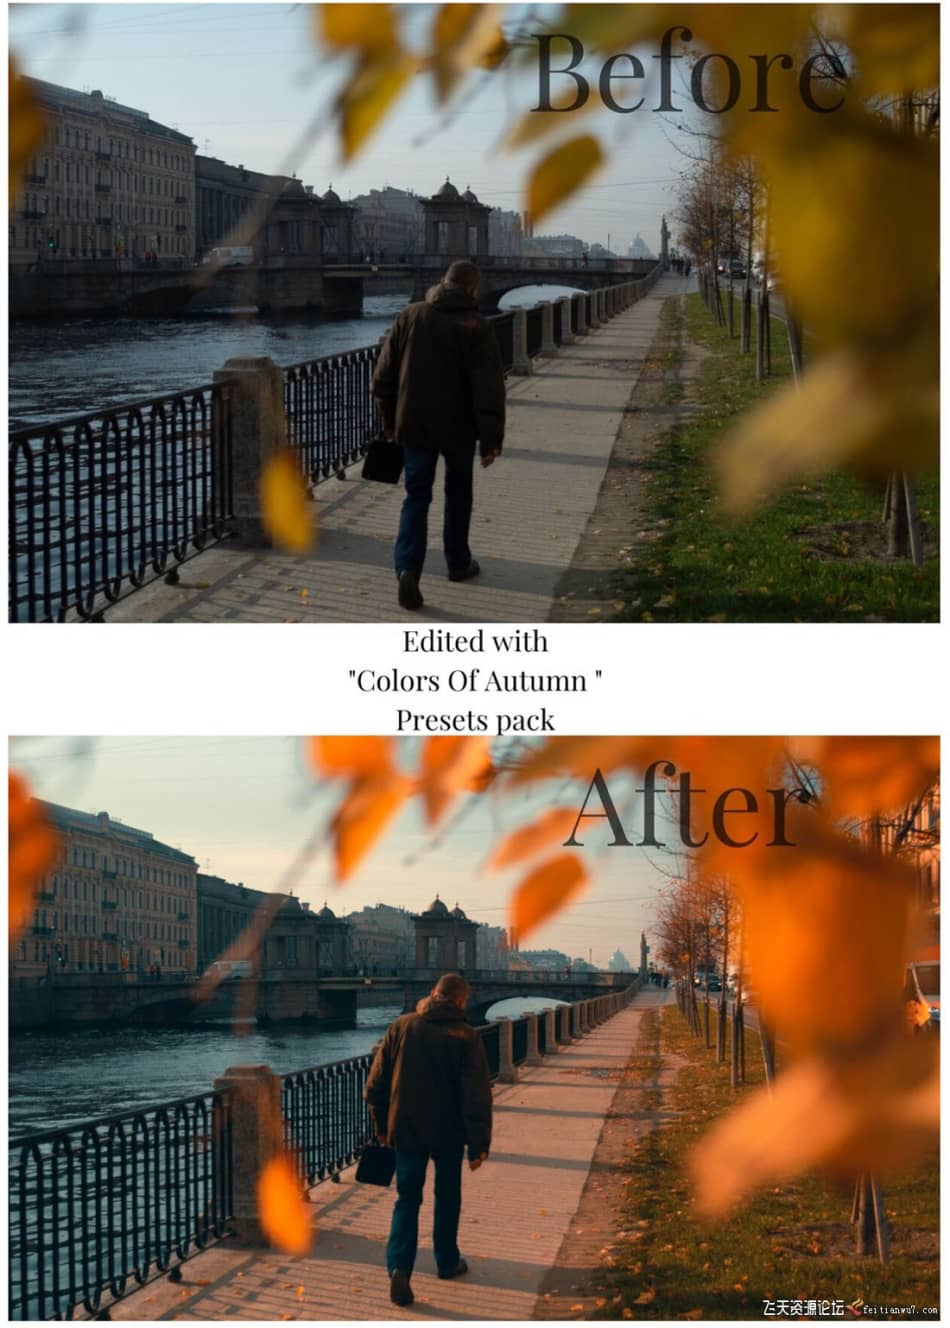 [旅拍LR预设] 街头摄影师 Viktor Balaguer 秋天的色彩Lightroom预设 Colors Of Autumn LR预设 第4张